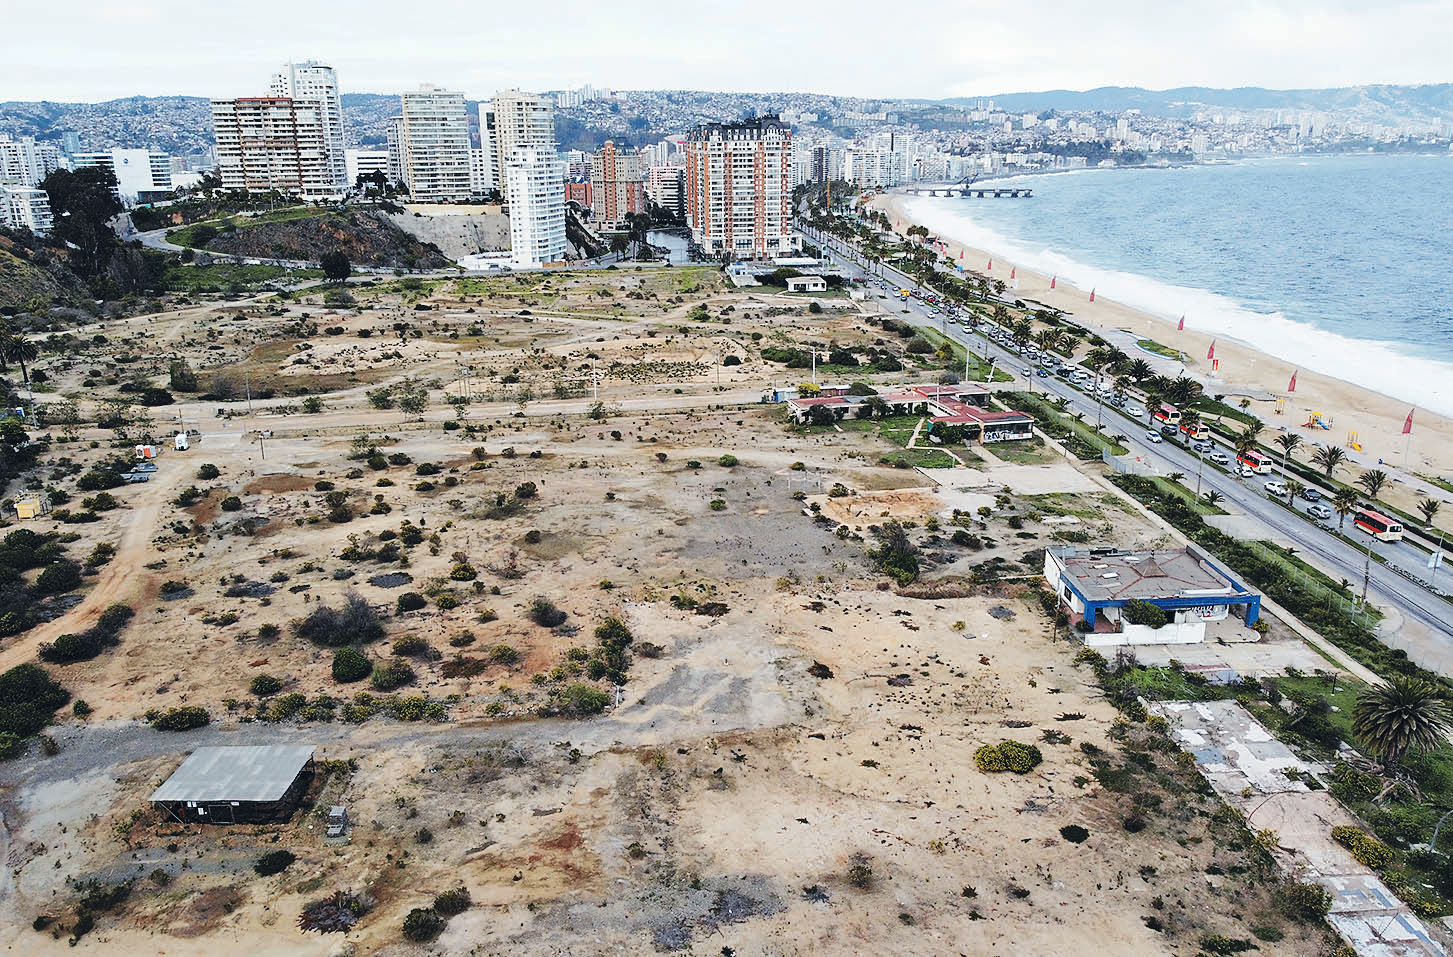  Avanza saneamiento ambiental del paño Las Salinas en Viña del Mar